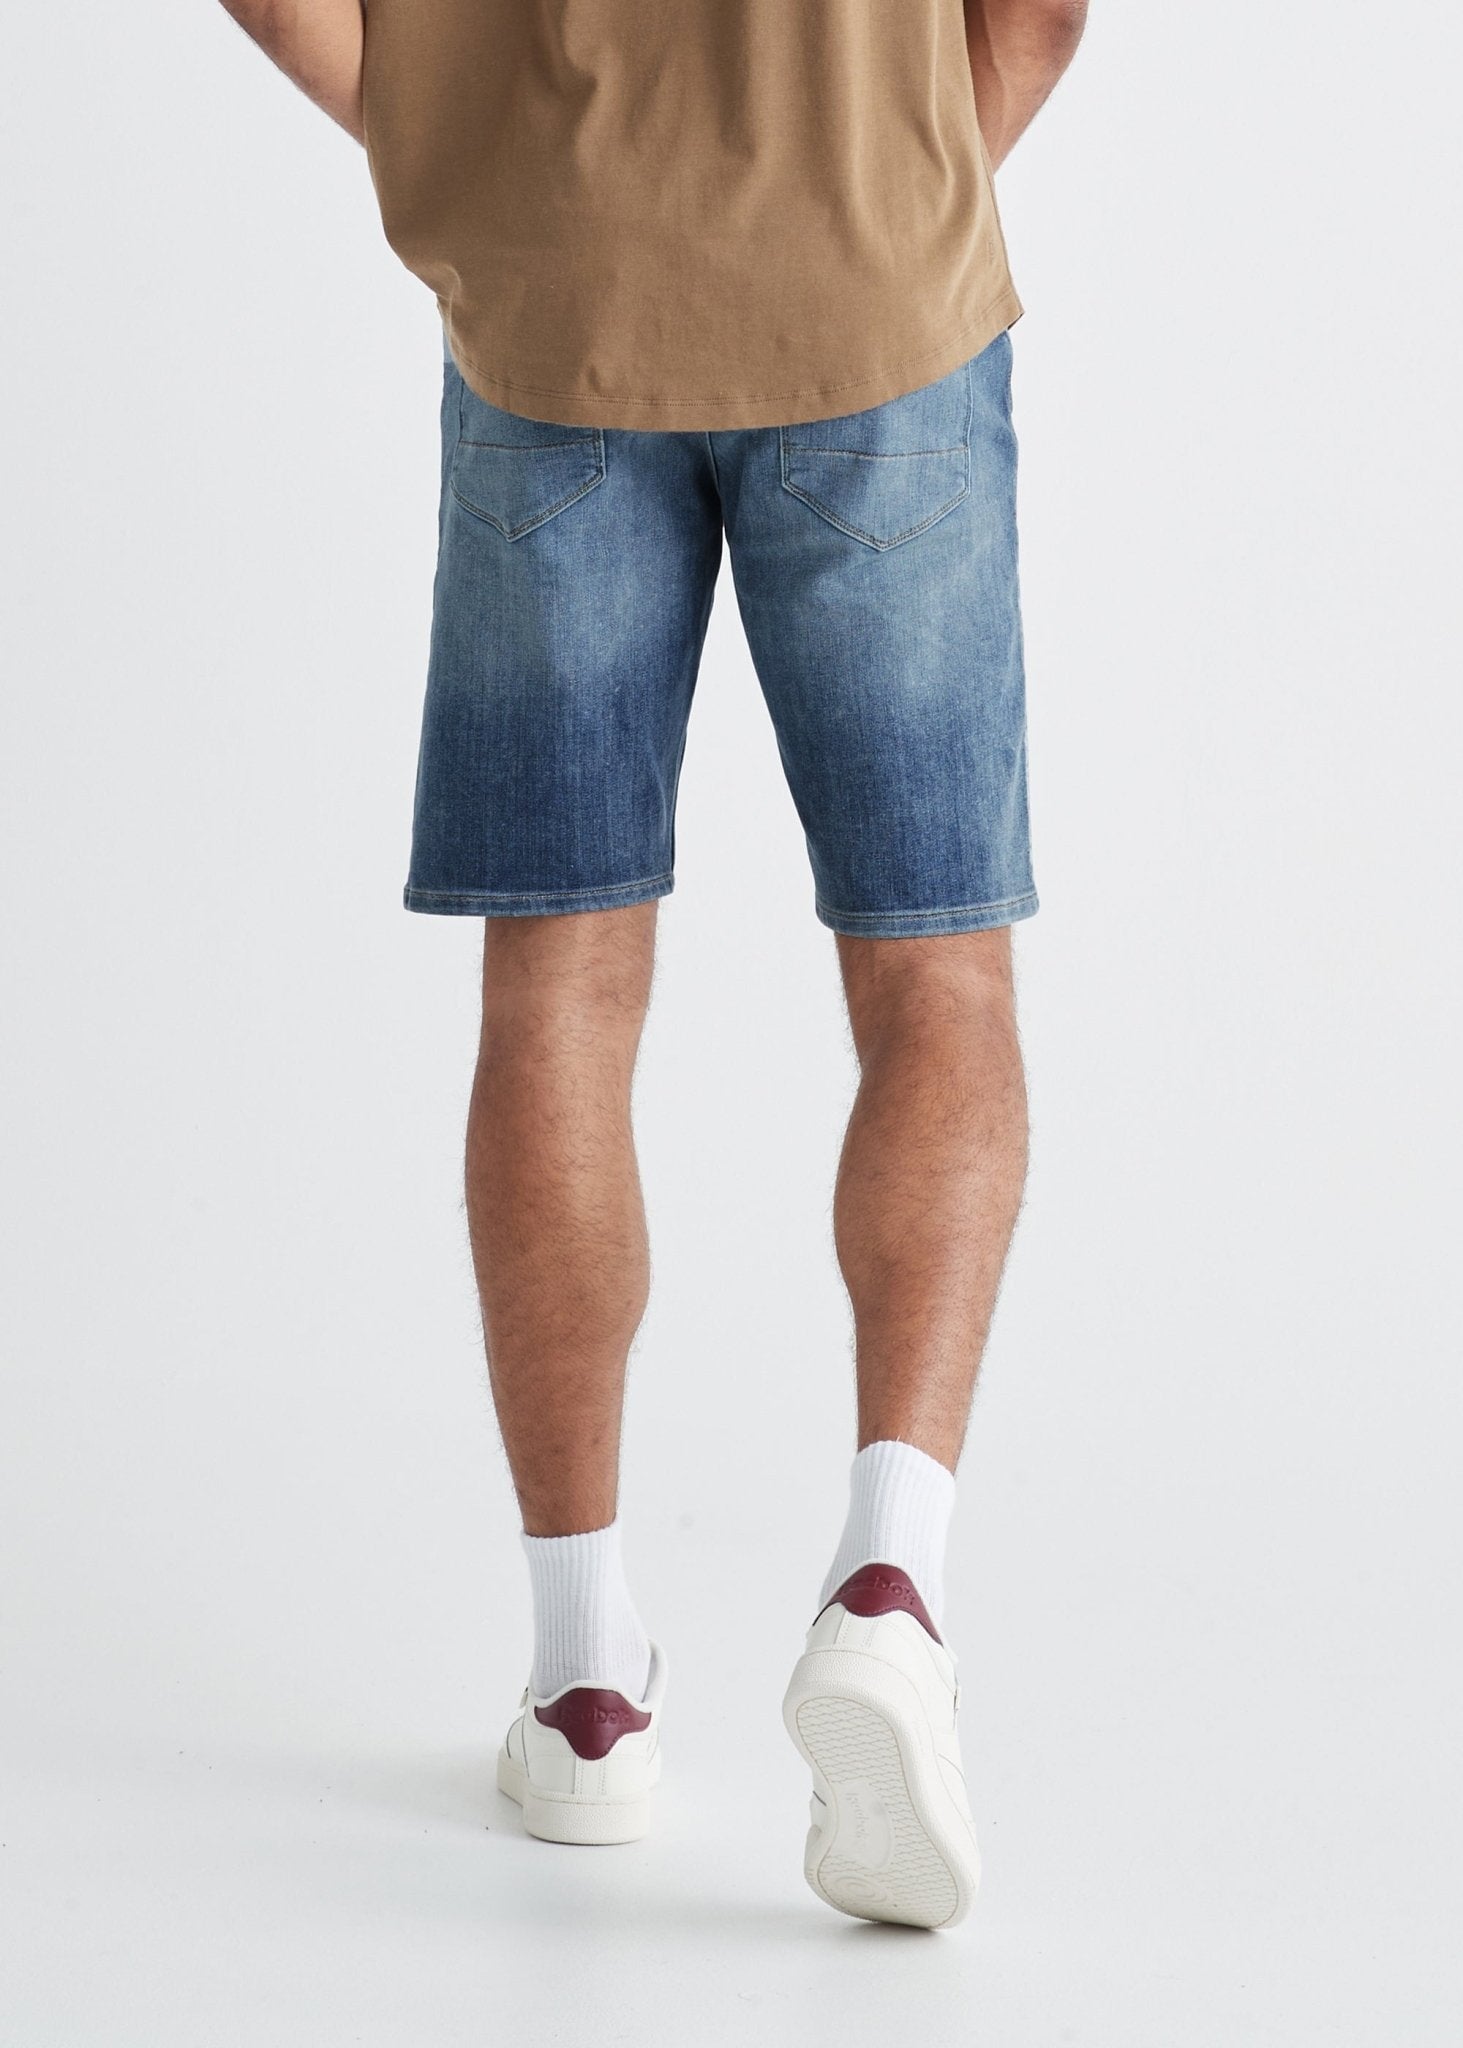 Buy Blue Washed Denim Shorts for Men – Metal Hawk